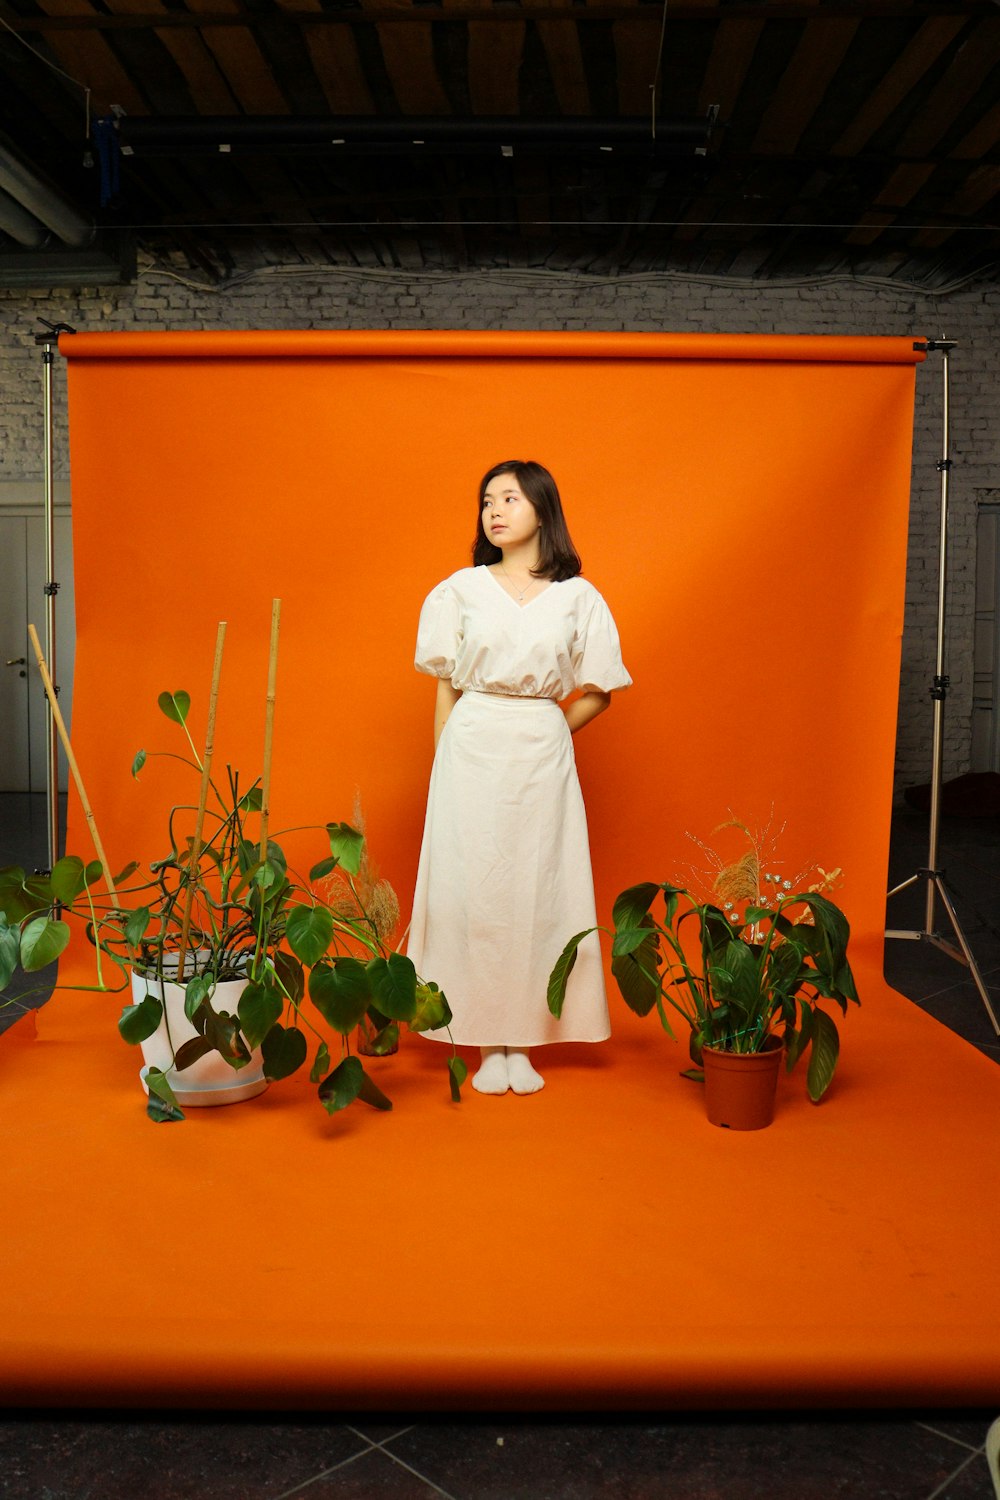 Una mujer con un vestido blanco de pie frente a un fondo naranja